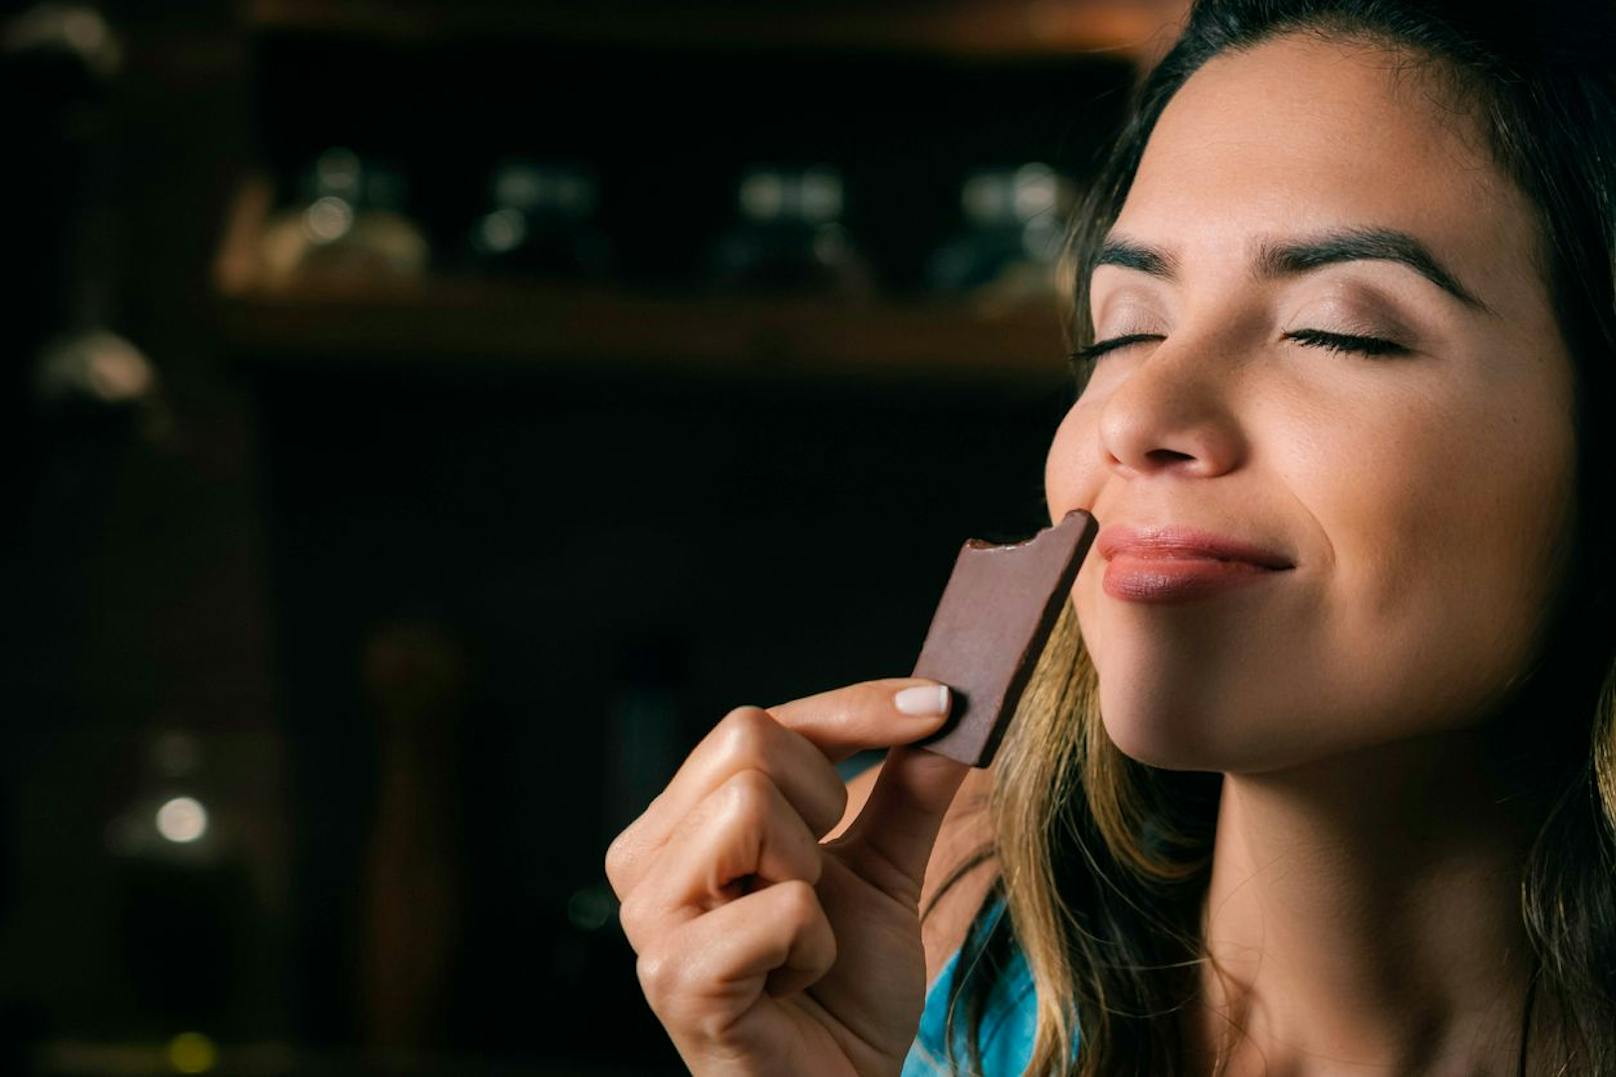 Wenn du rohen Kakao zu dir nimmst hebt sich deine Stimmung. Das liegt an der Aminosäure Tryptophan, welches in das Glückshormon Serotonin umgewandelt wird.